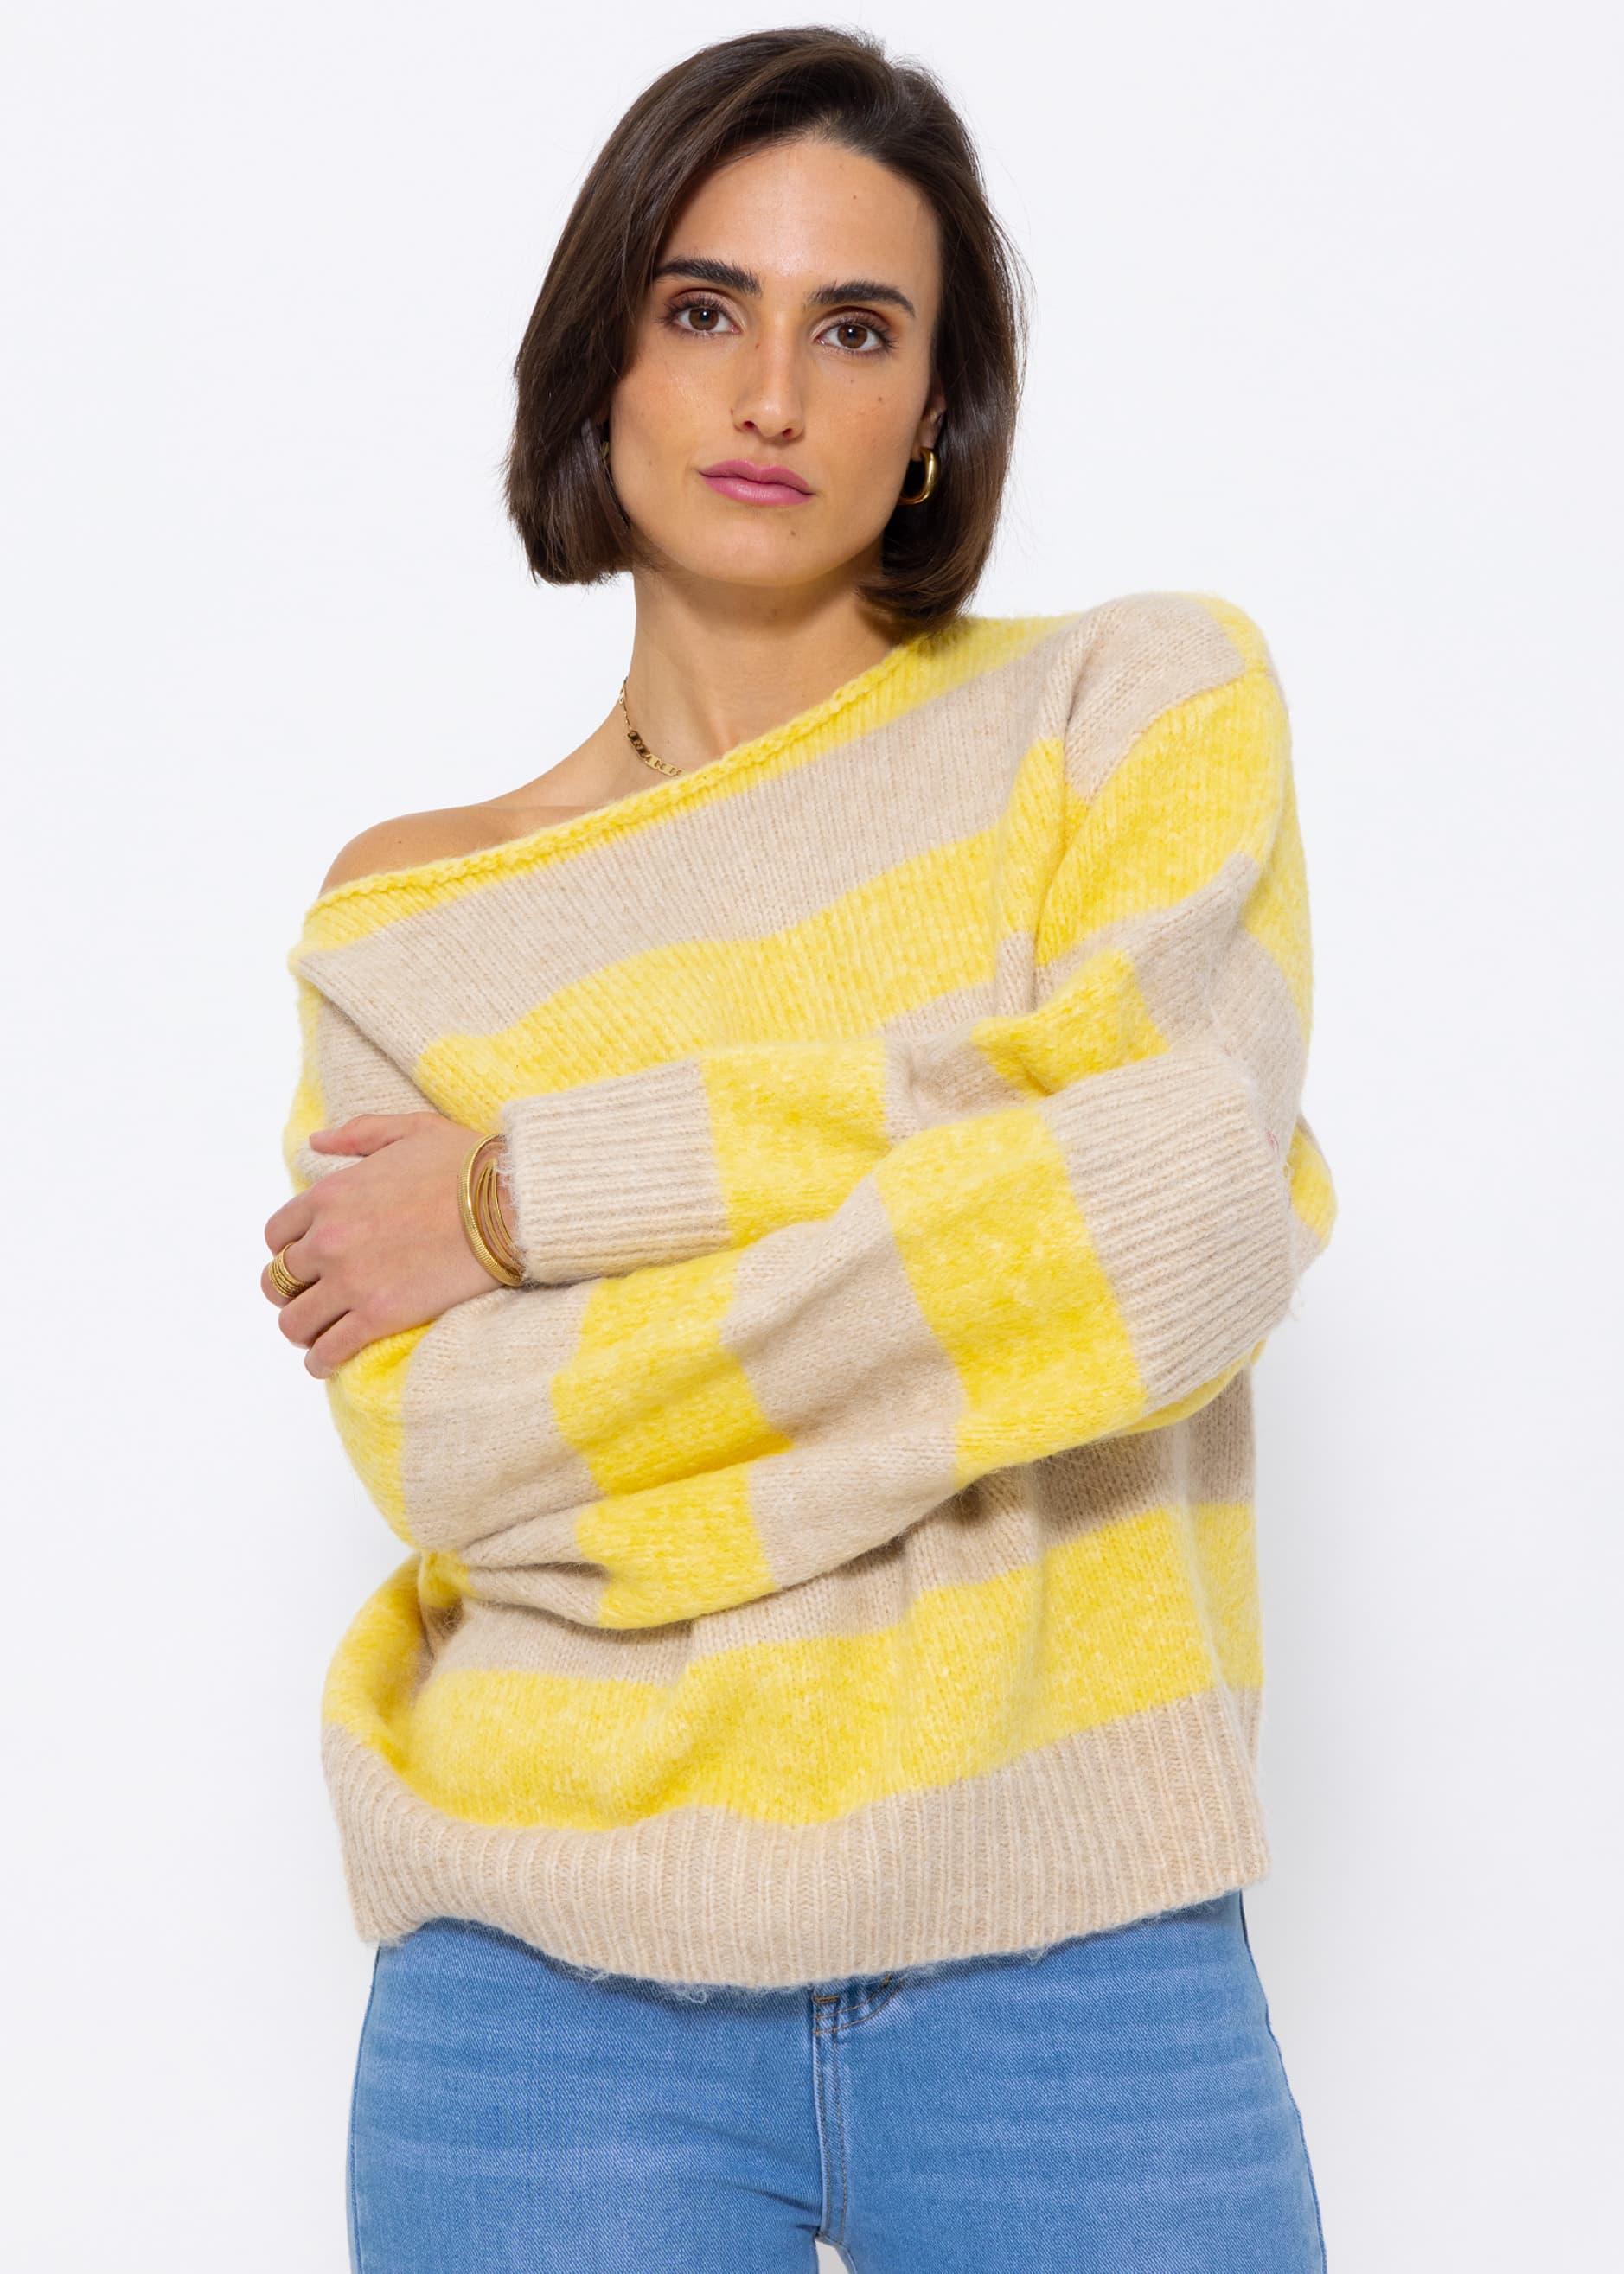 Свитер SASSYCLASSY Oversize Strick, желтый свитер размер oversize 40 50 желтый